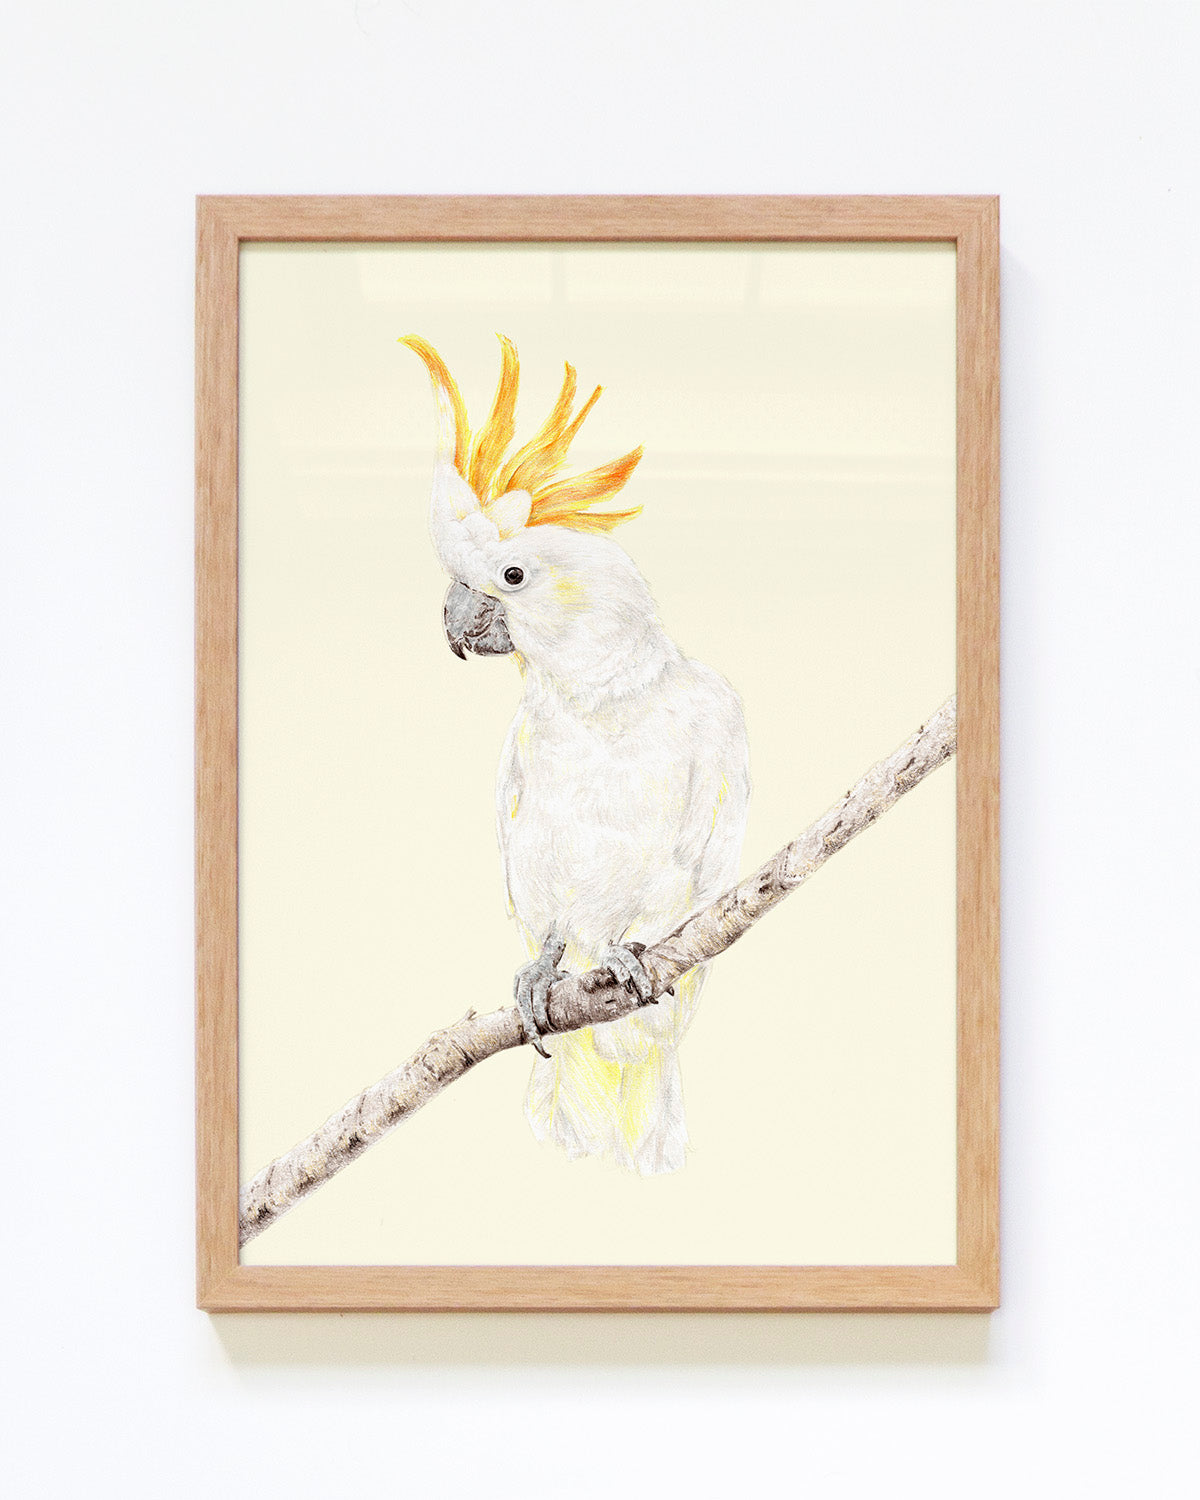 Bird art print featuring a cockatoo